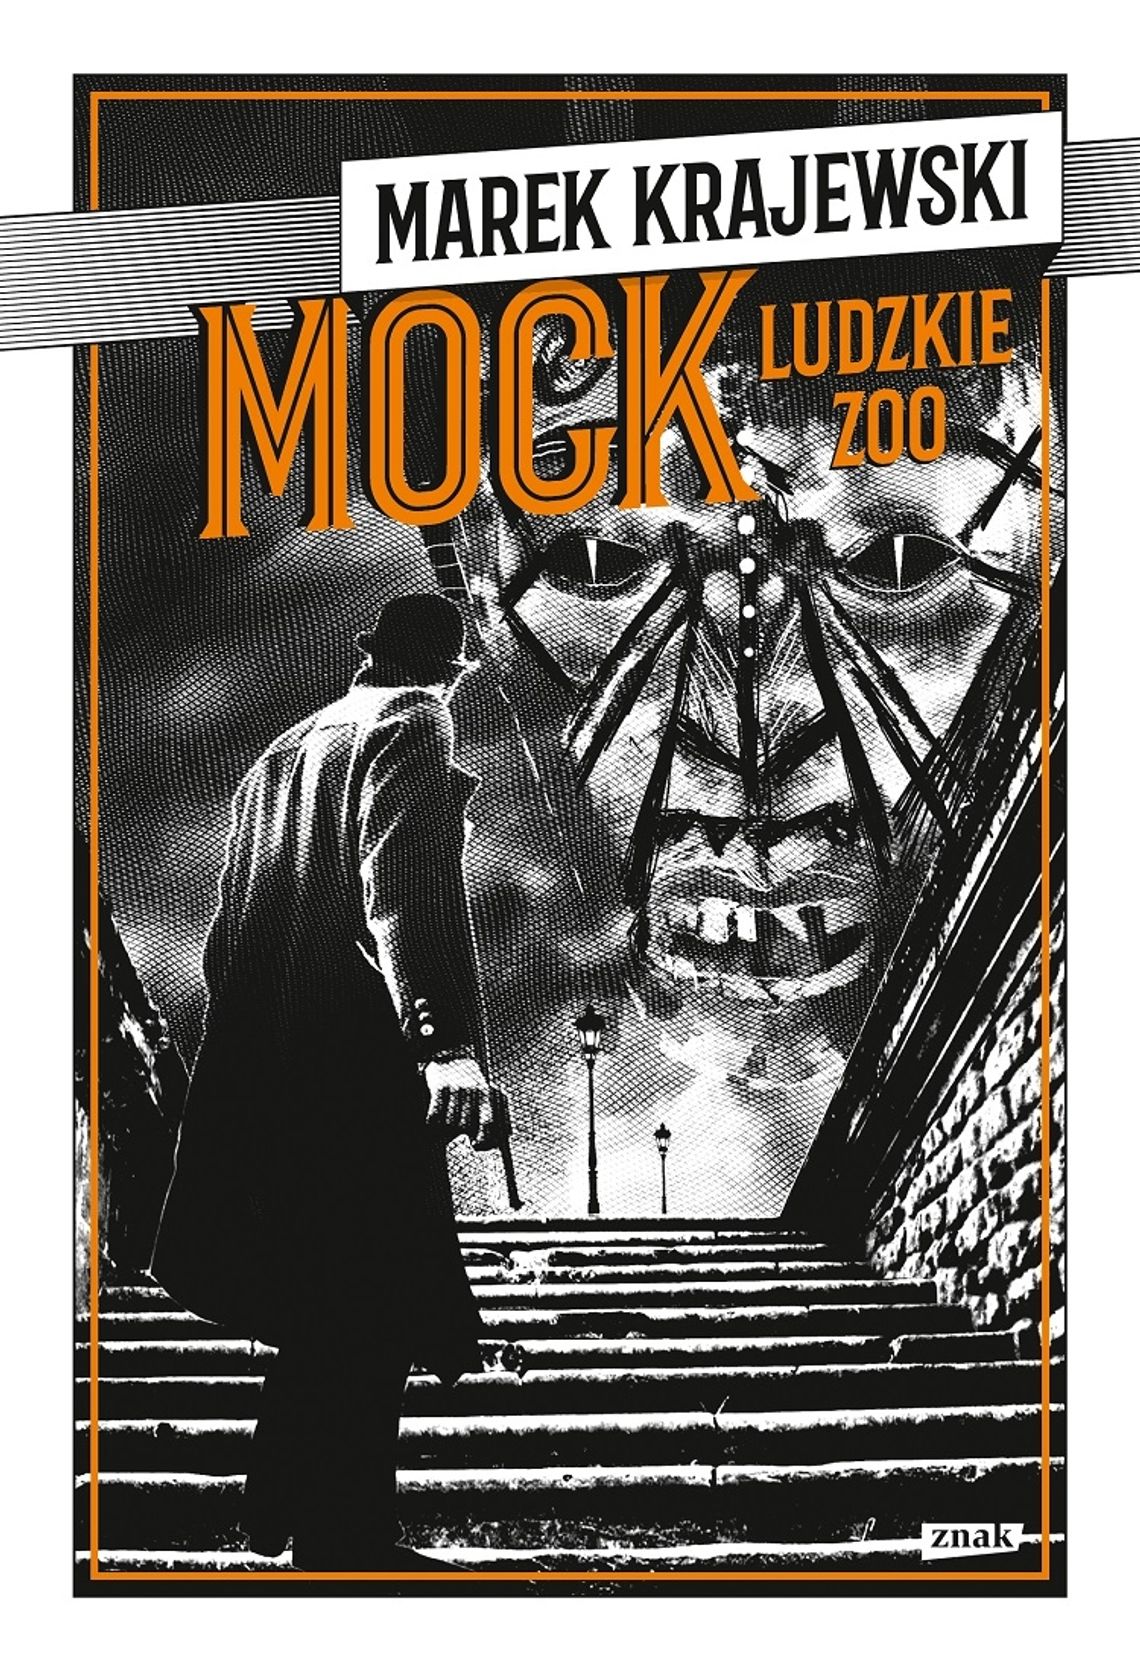 Marek Krajewski "Mock. Ludzkie Zoo"; wyd. ZNAK